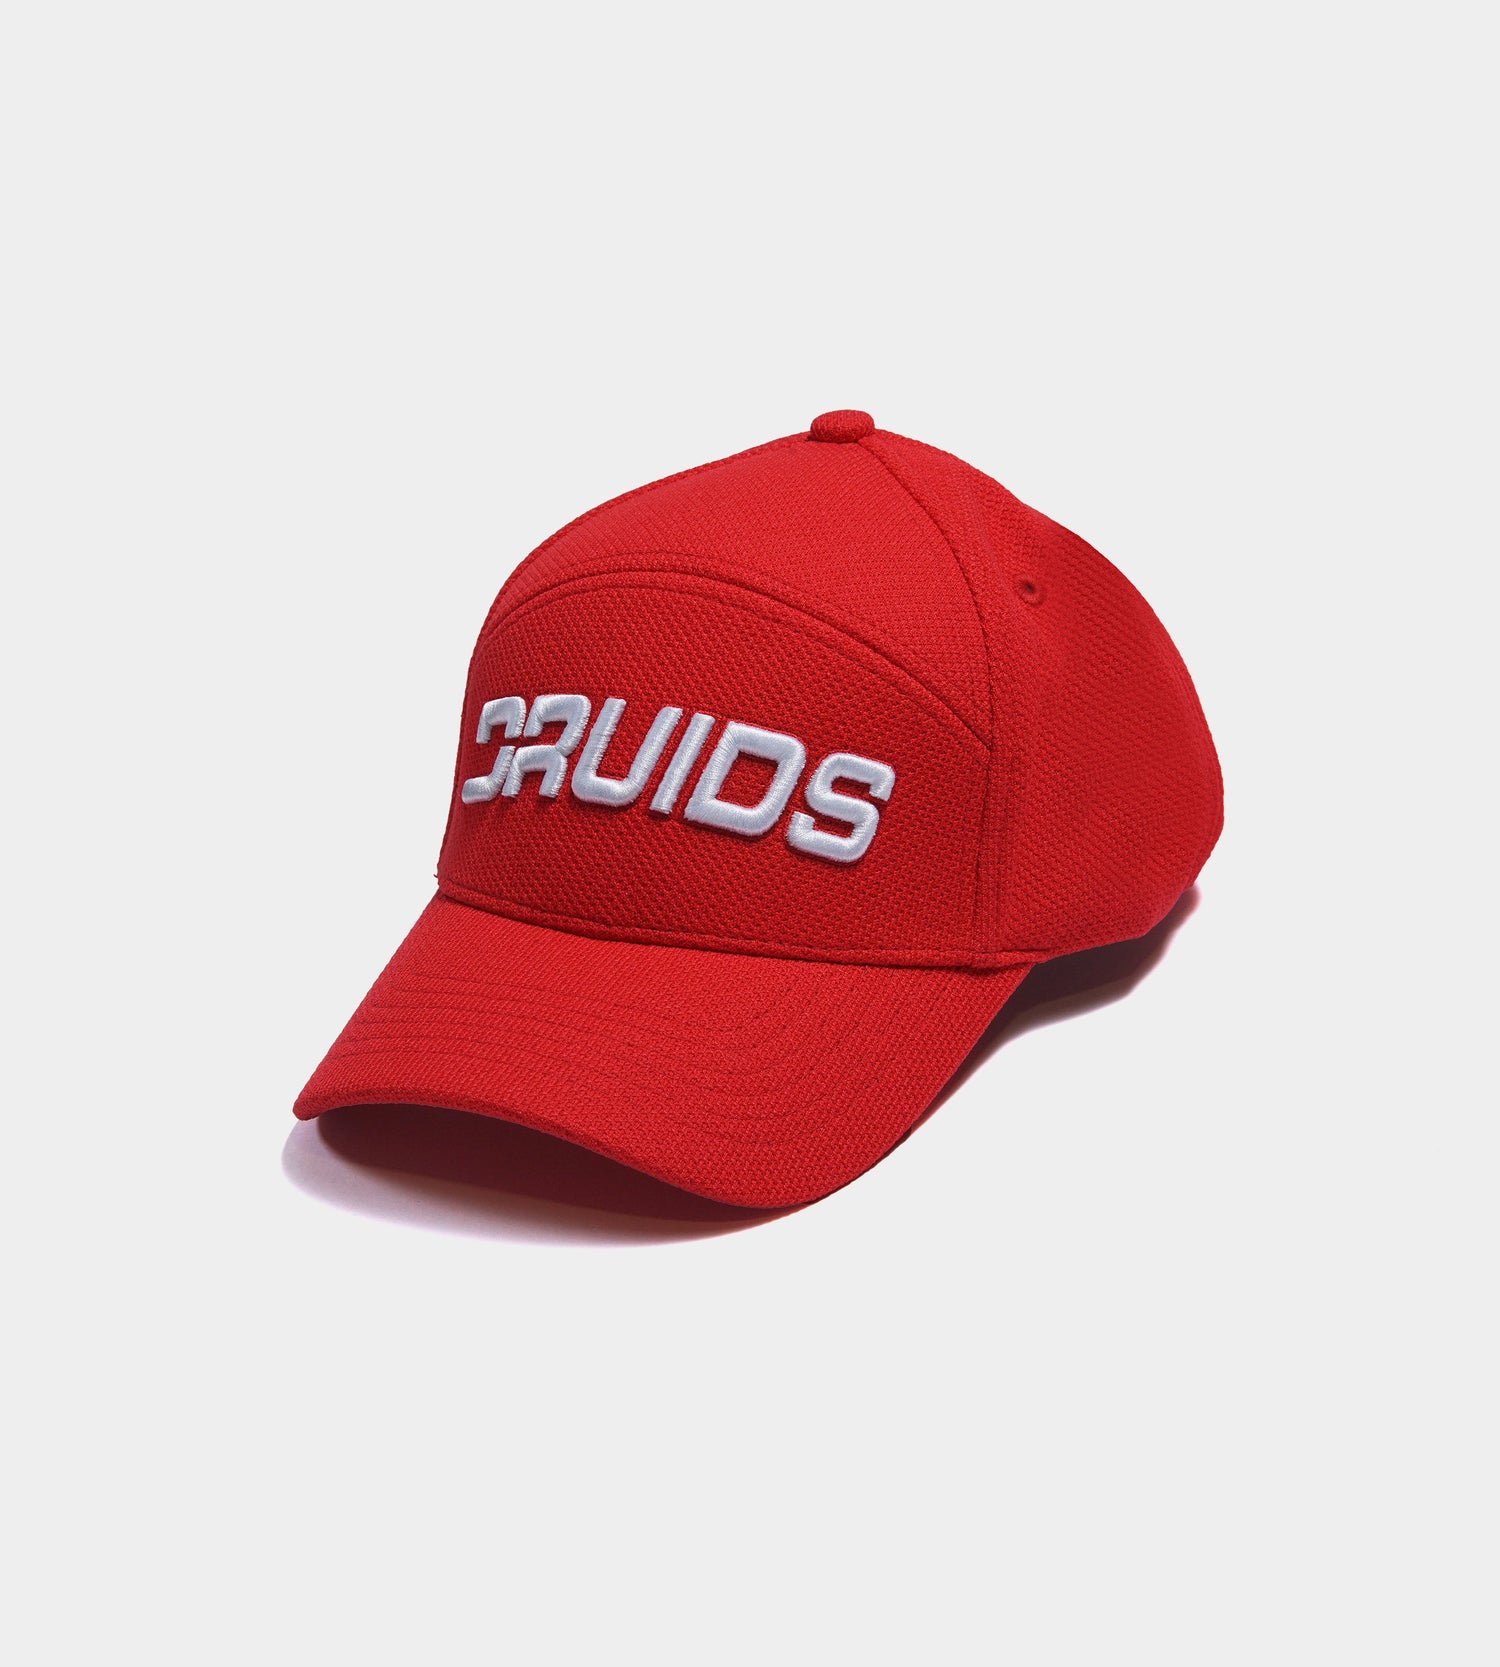 PERFORATED CAP - RED - DRUIDS